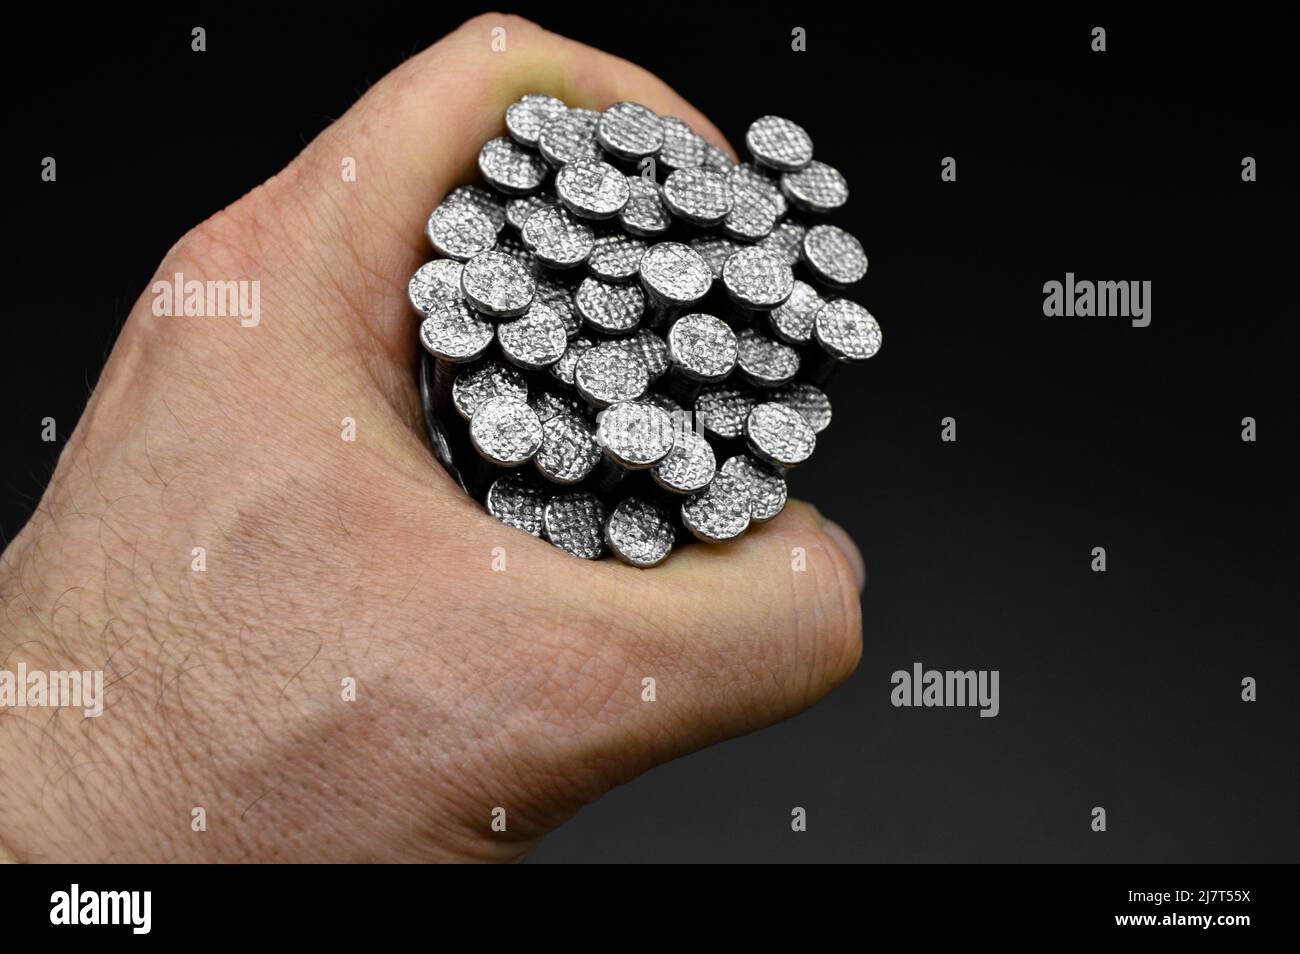 Eine Menge von Konstruktion Eisen Nägel Hand, industrielle Teile, isoliert  auf schwarzem Hintergrund Stockfotografie - Alamy